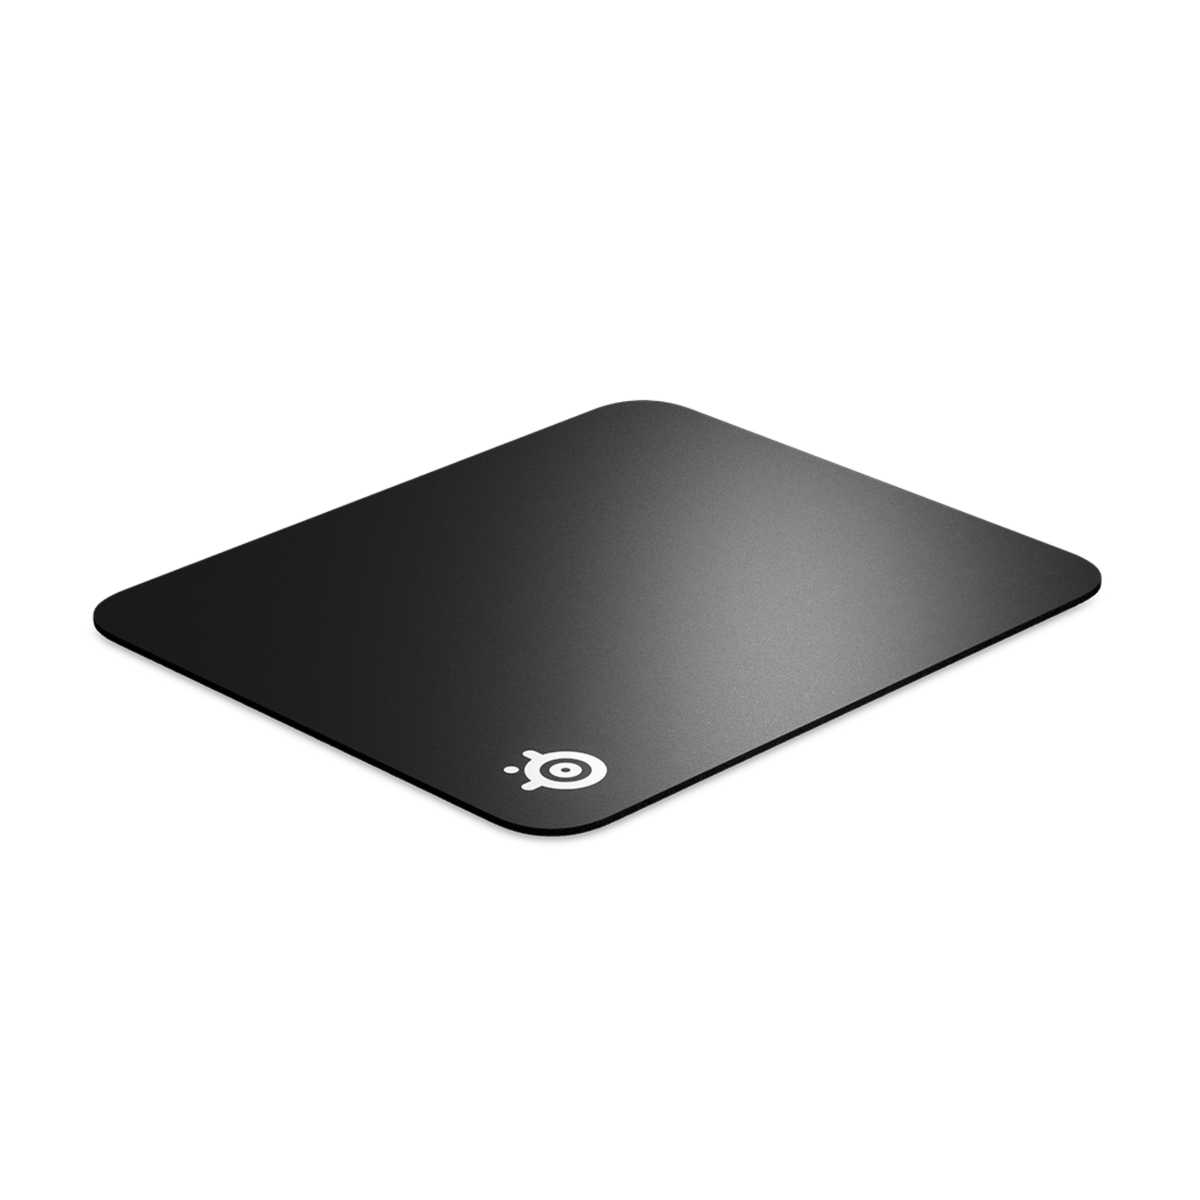 Steelseries Gaming MousePad 63821, Black, QCK HARD 63821